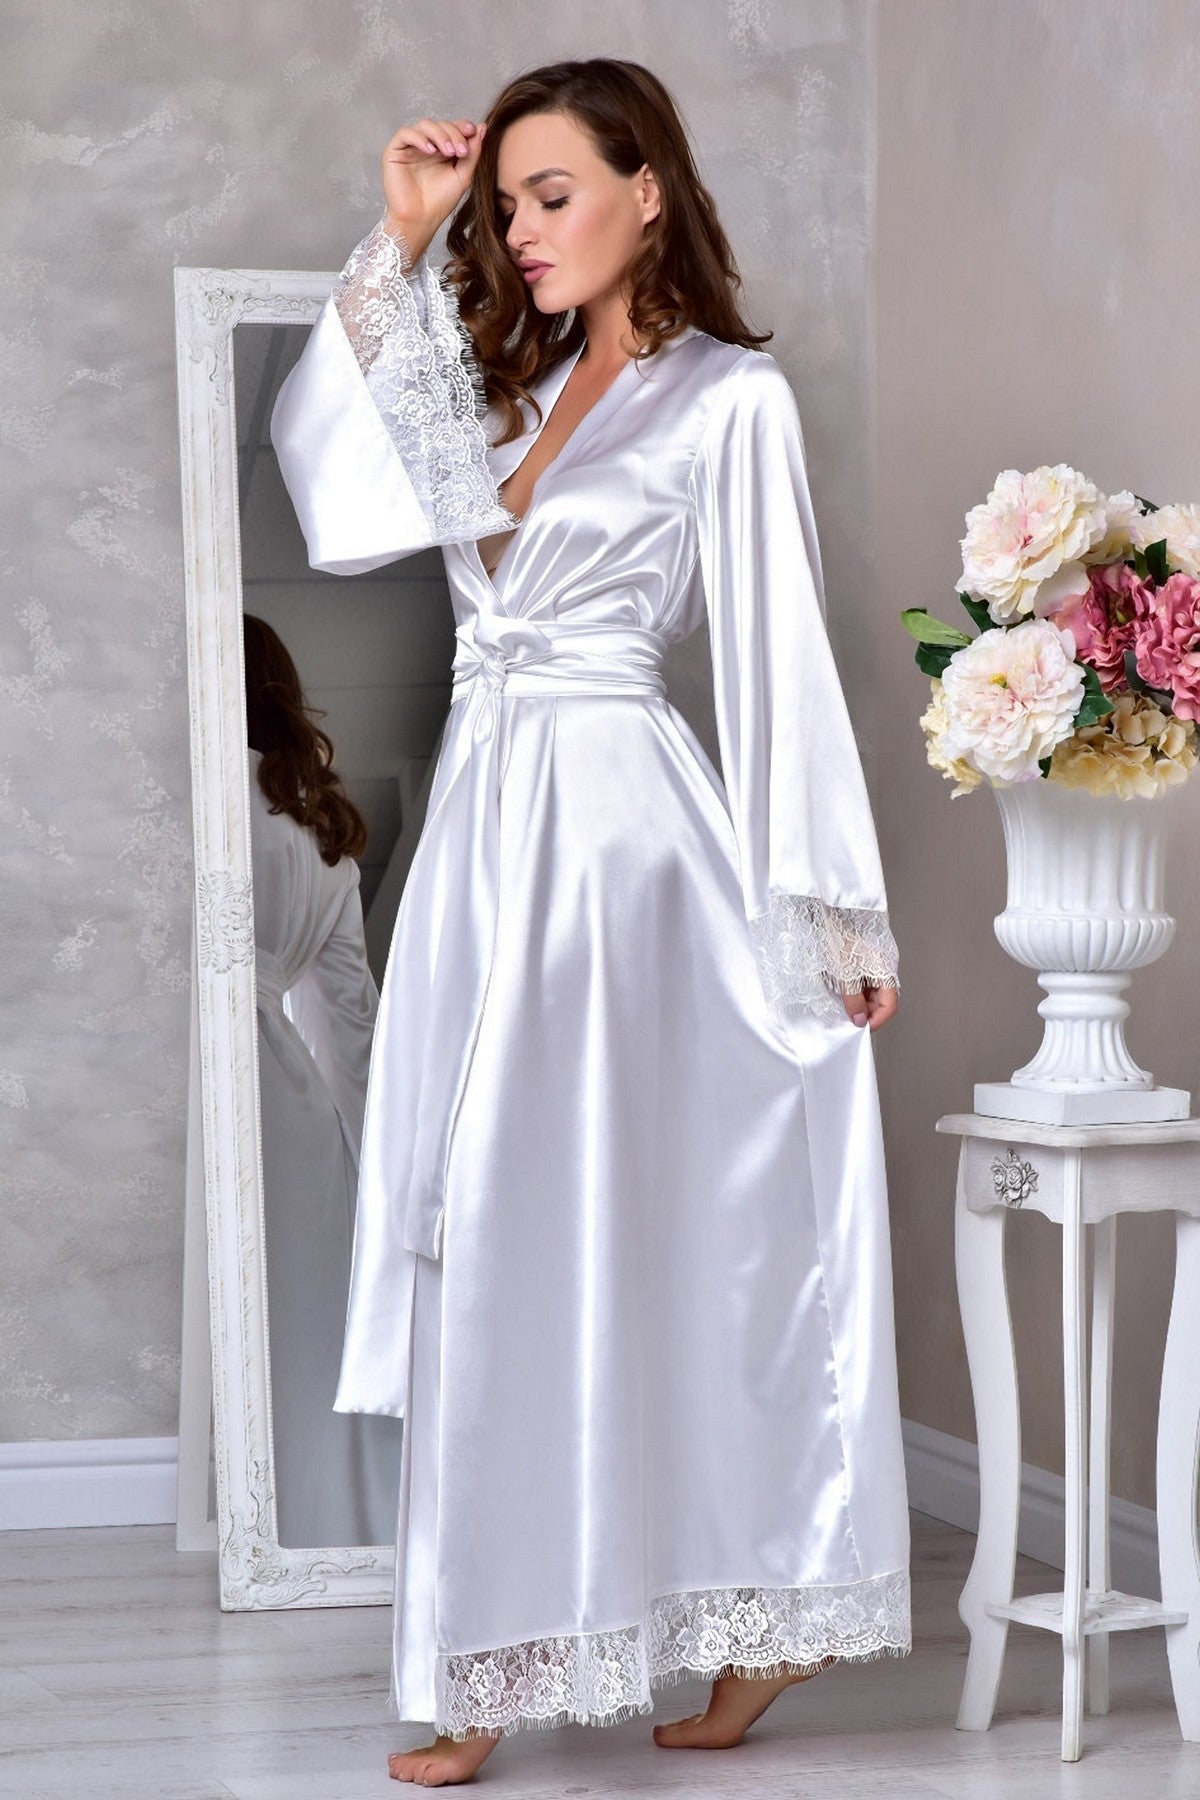 Bridal Lace-Trim Robe - Wedding Day Elegance